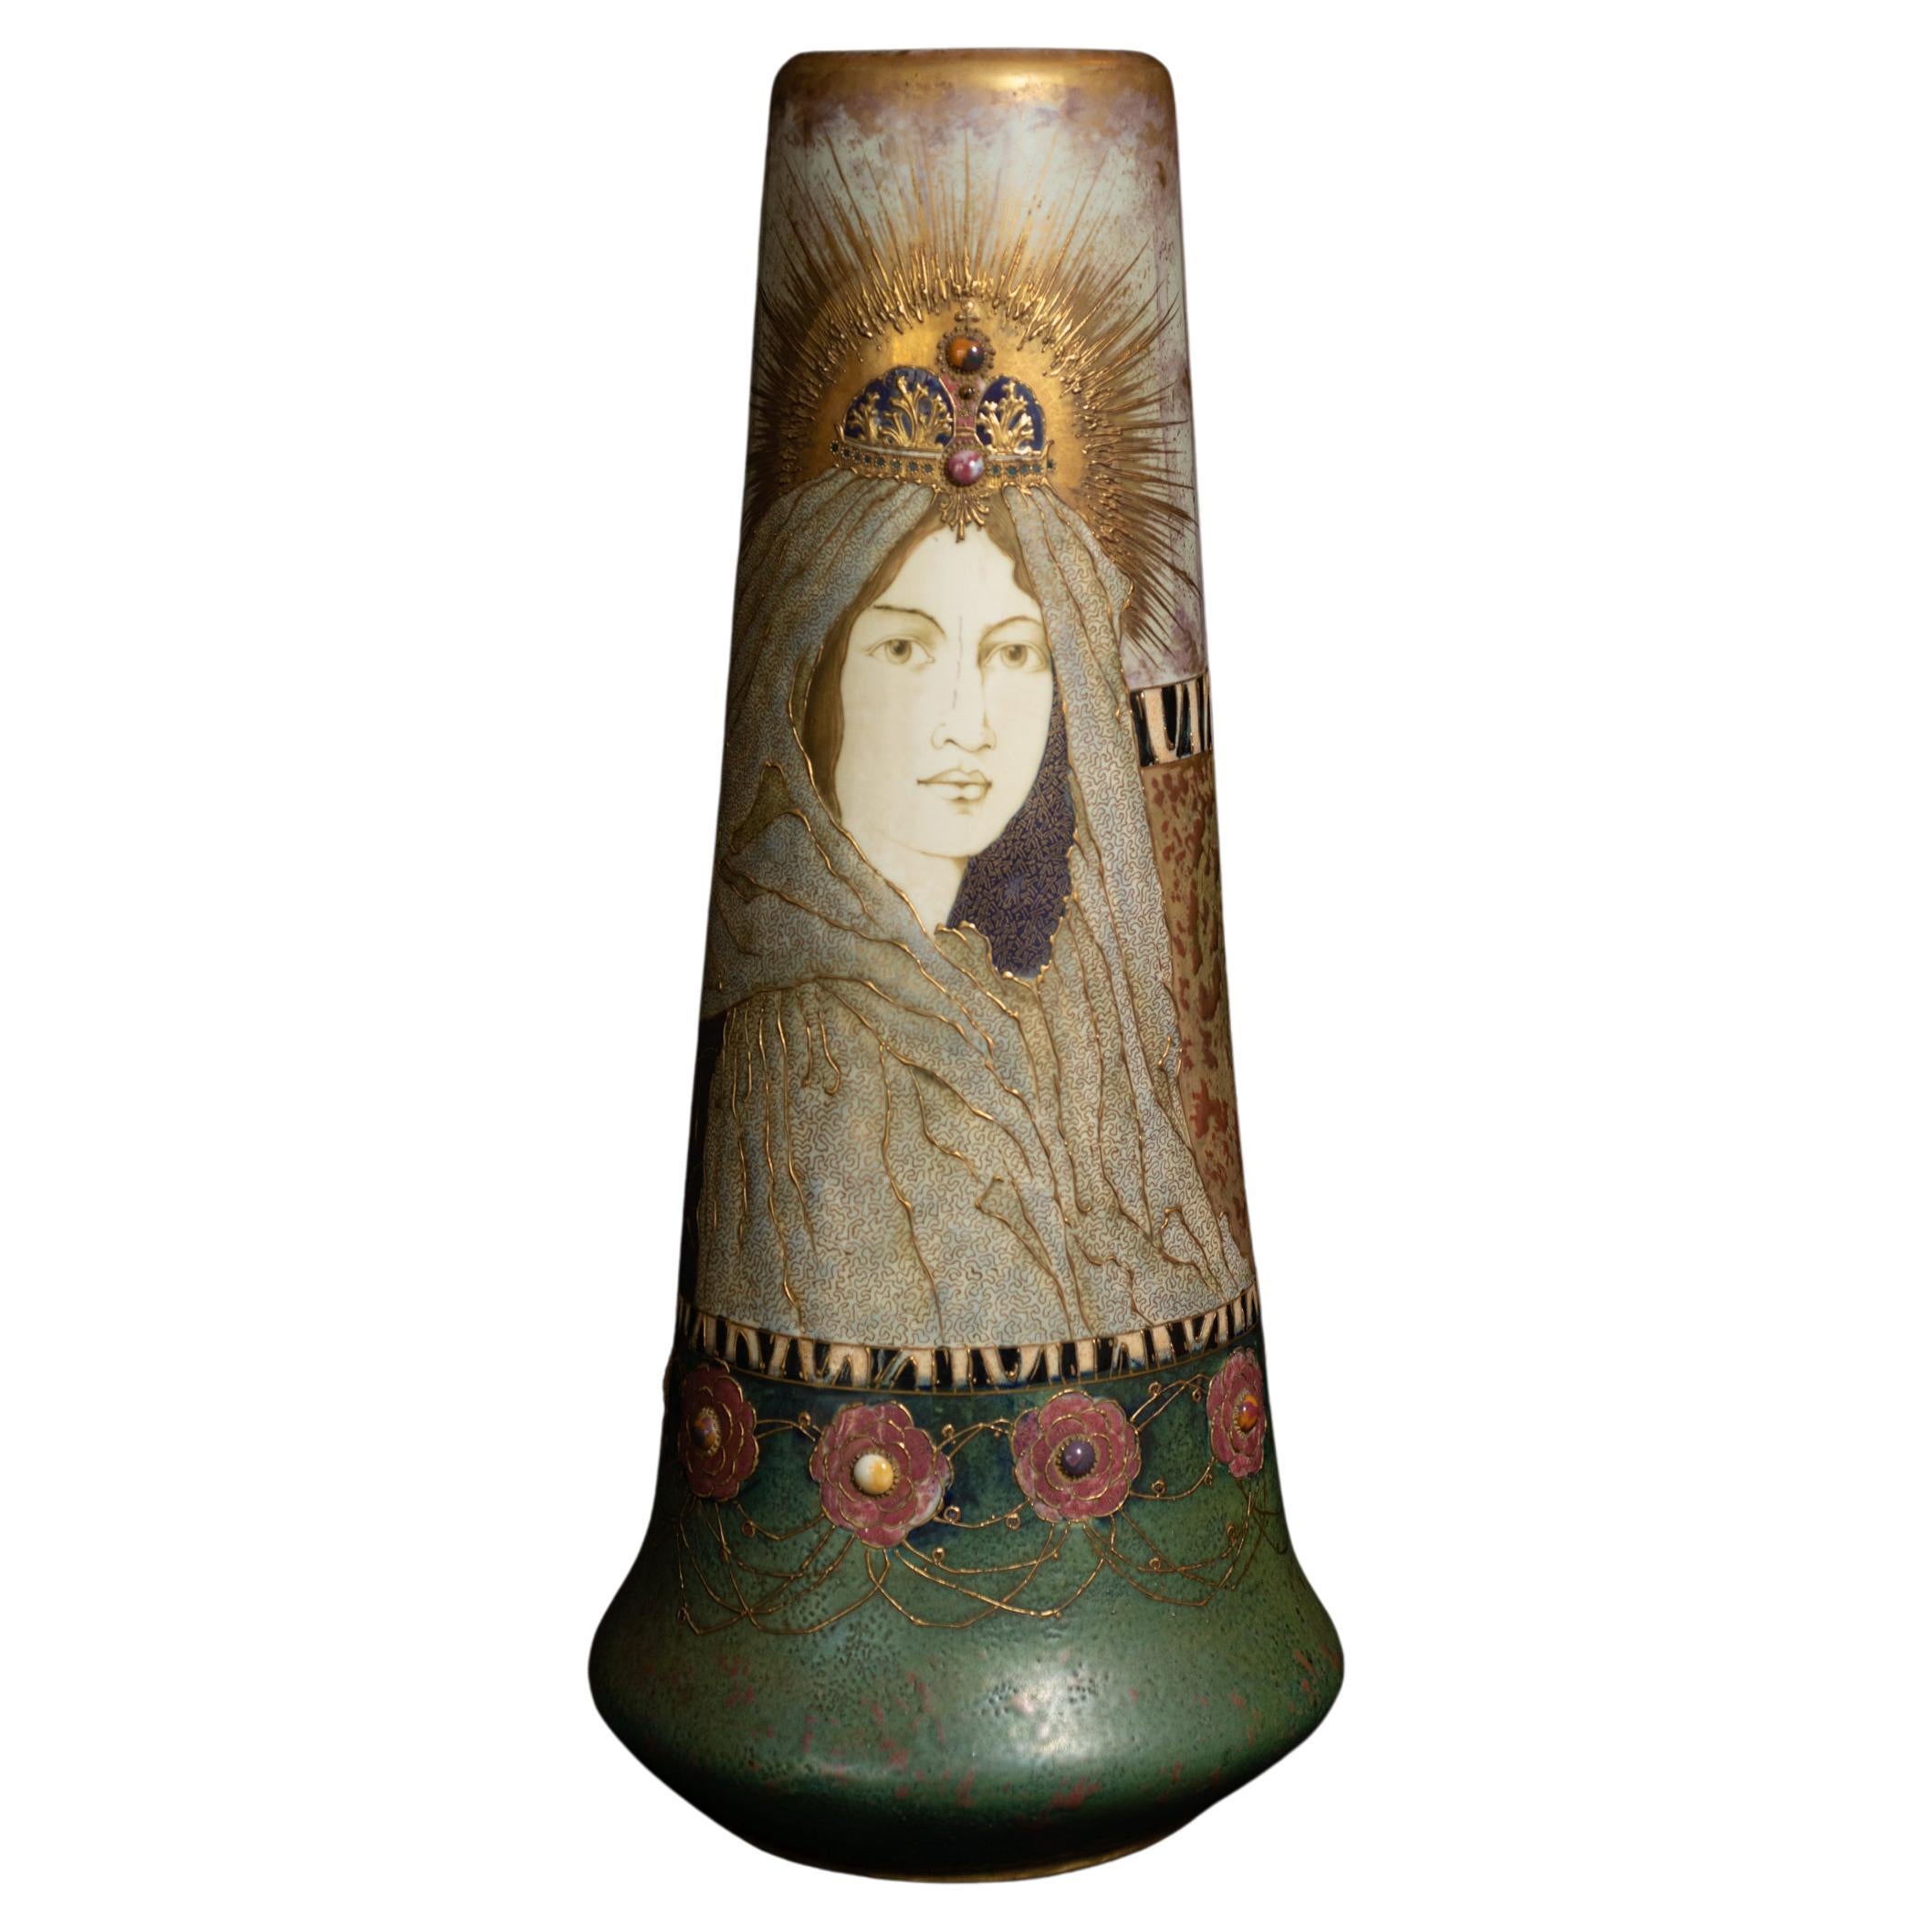 Art Nouveau Fairy Tale Princess Vase by RStK Amphora